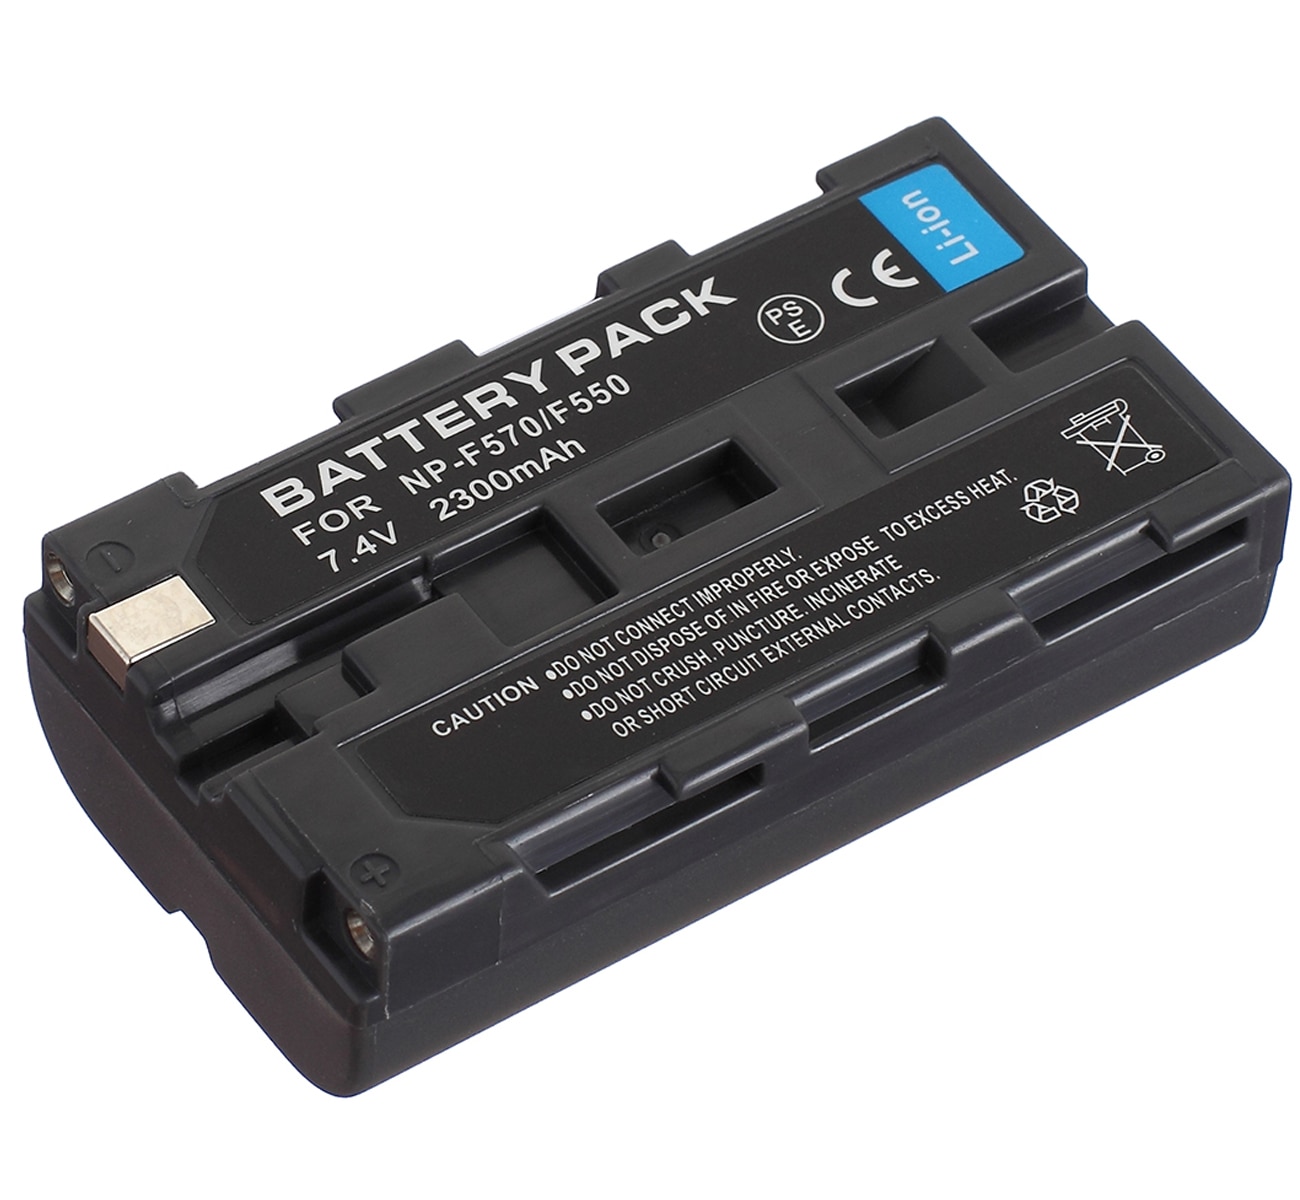 Batterij Pack Voor Sony NP-F330, NP-F530, NP-F550, NP-F570, NP-F730, NP-F750, NP-F770, NP-F930, NP-F950, NP-F970 Infolithium L Serie